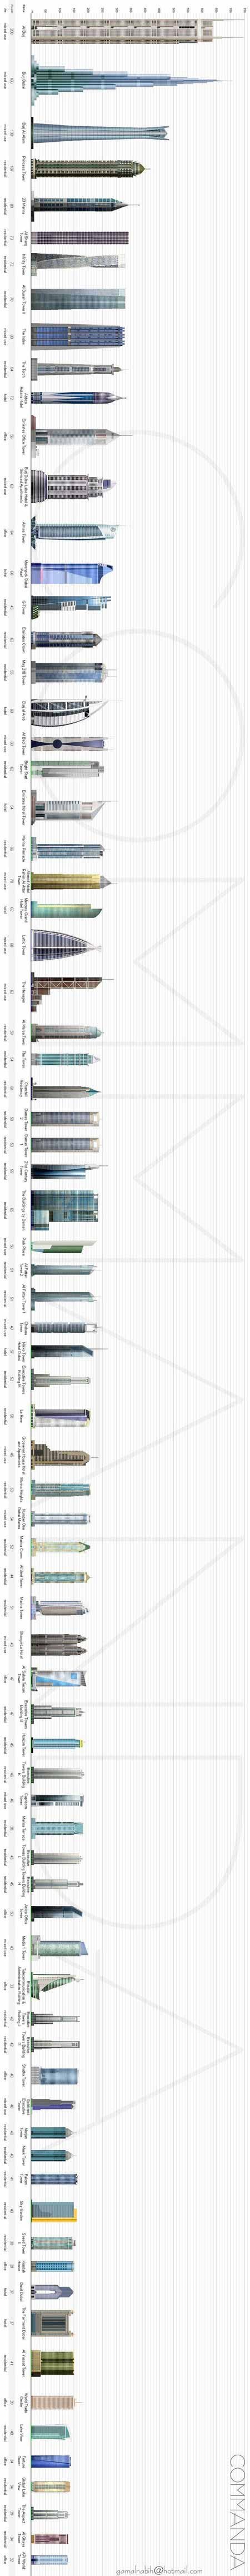 Dubai Towers Diagram